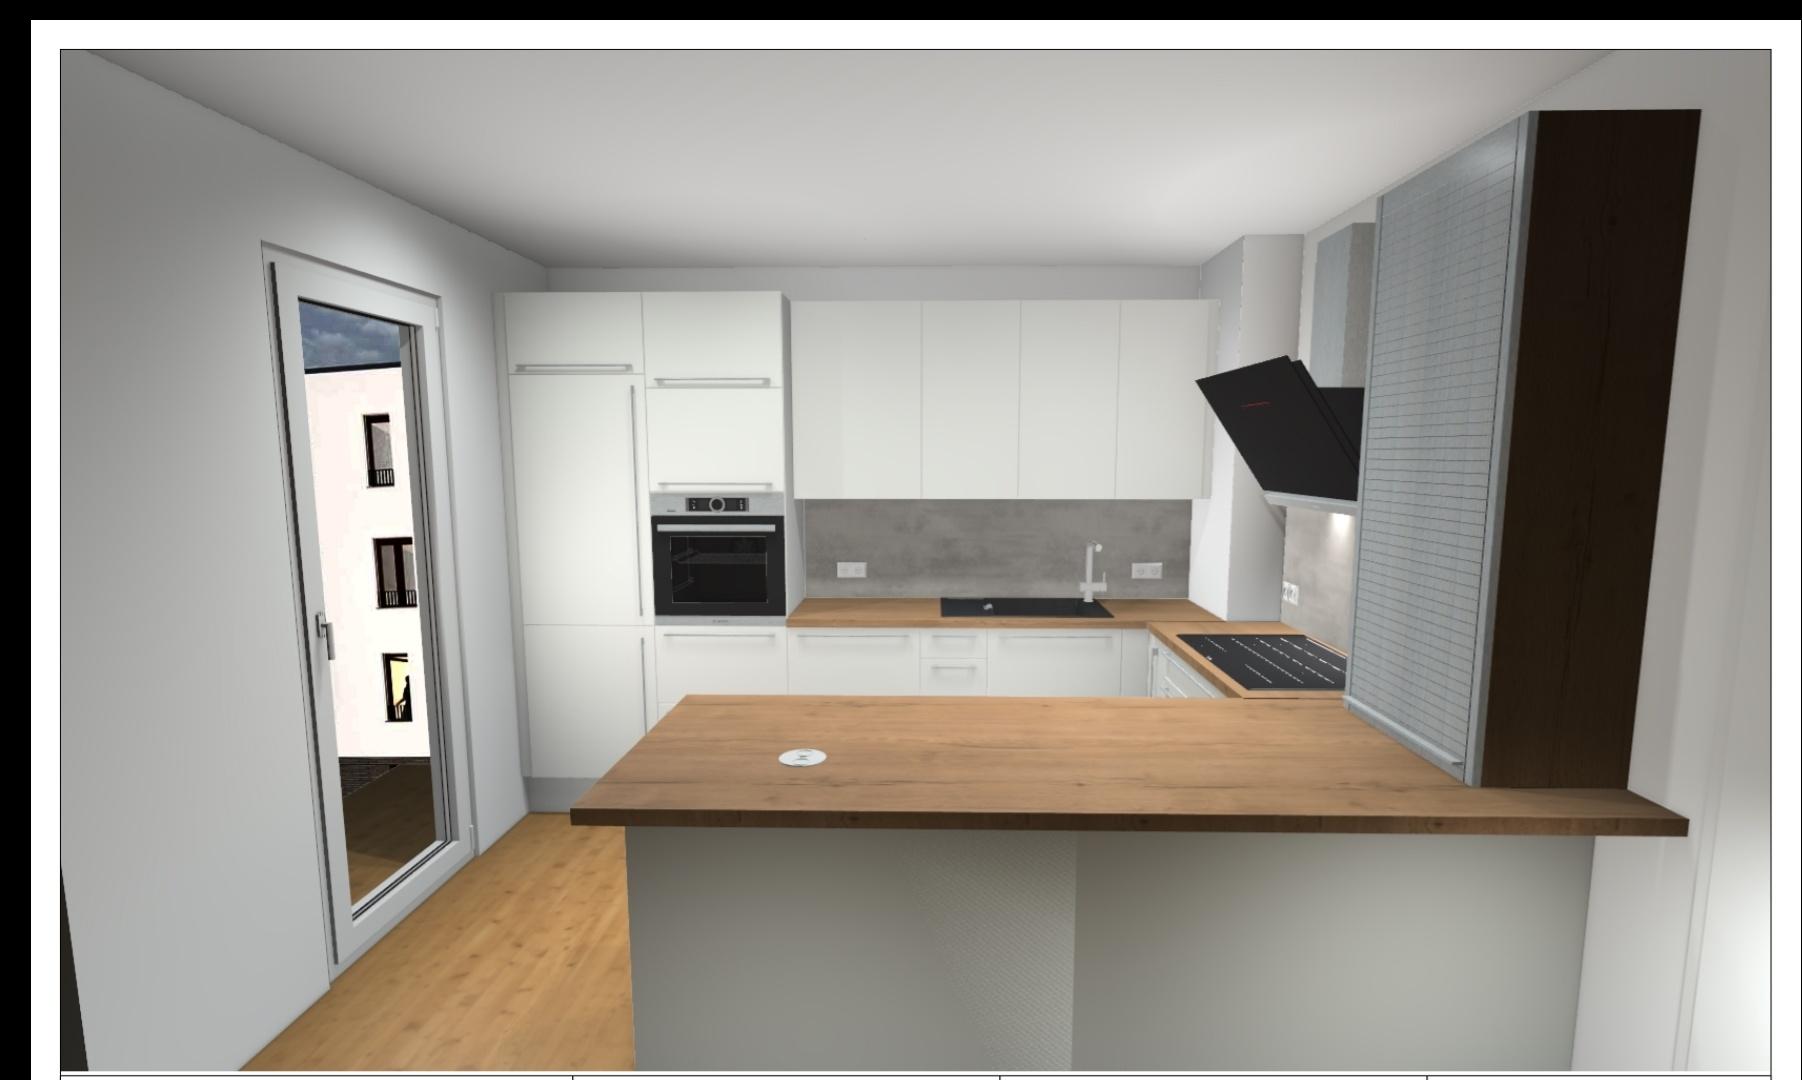 Náš nový byt v novostavbě - Finální verze kuchyně